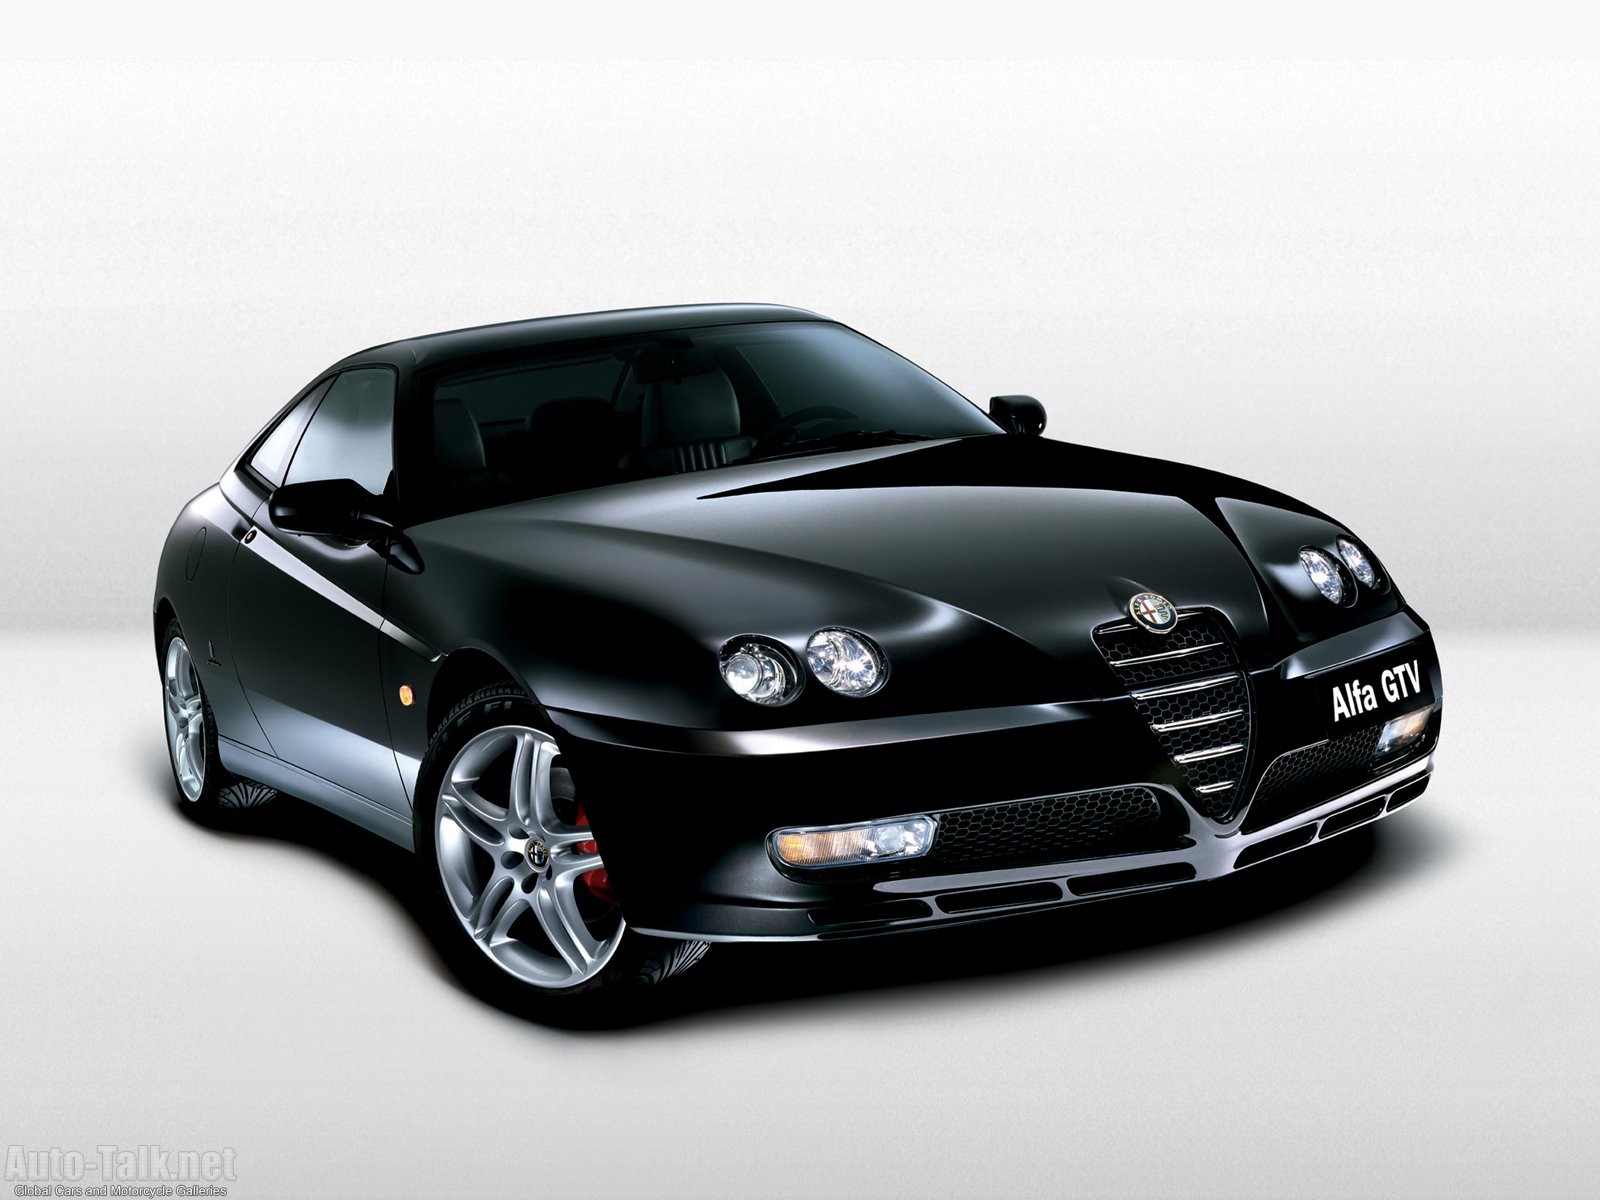 GTV from Alfa Romeo